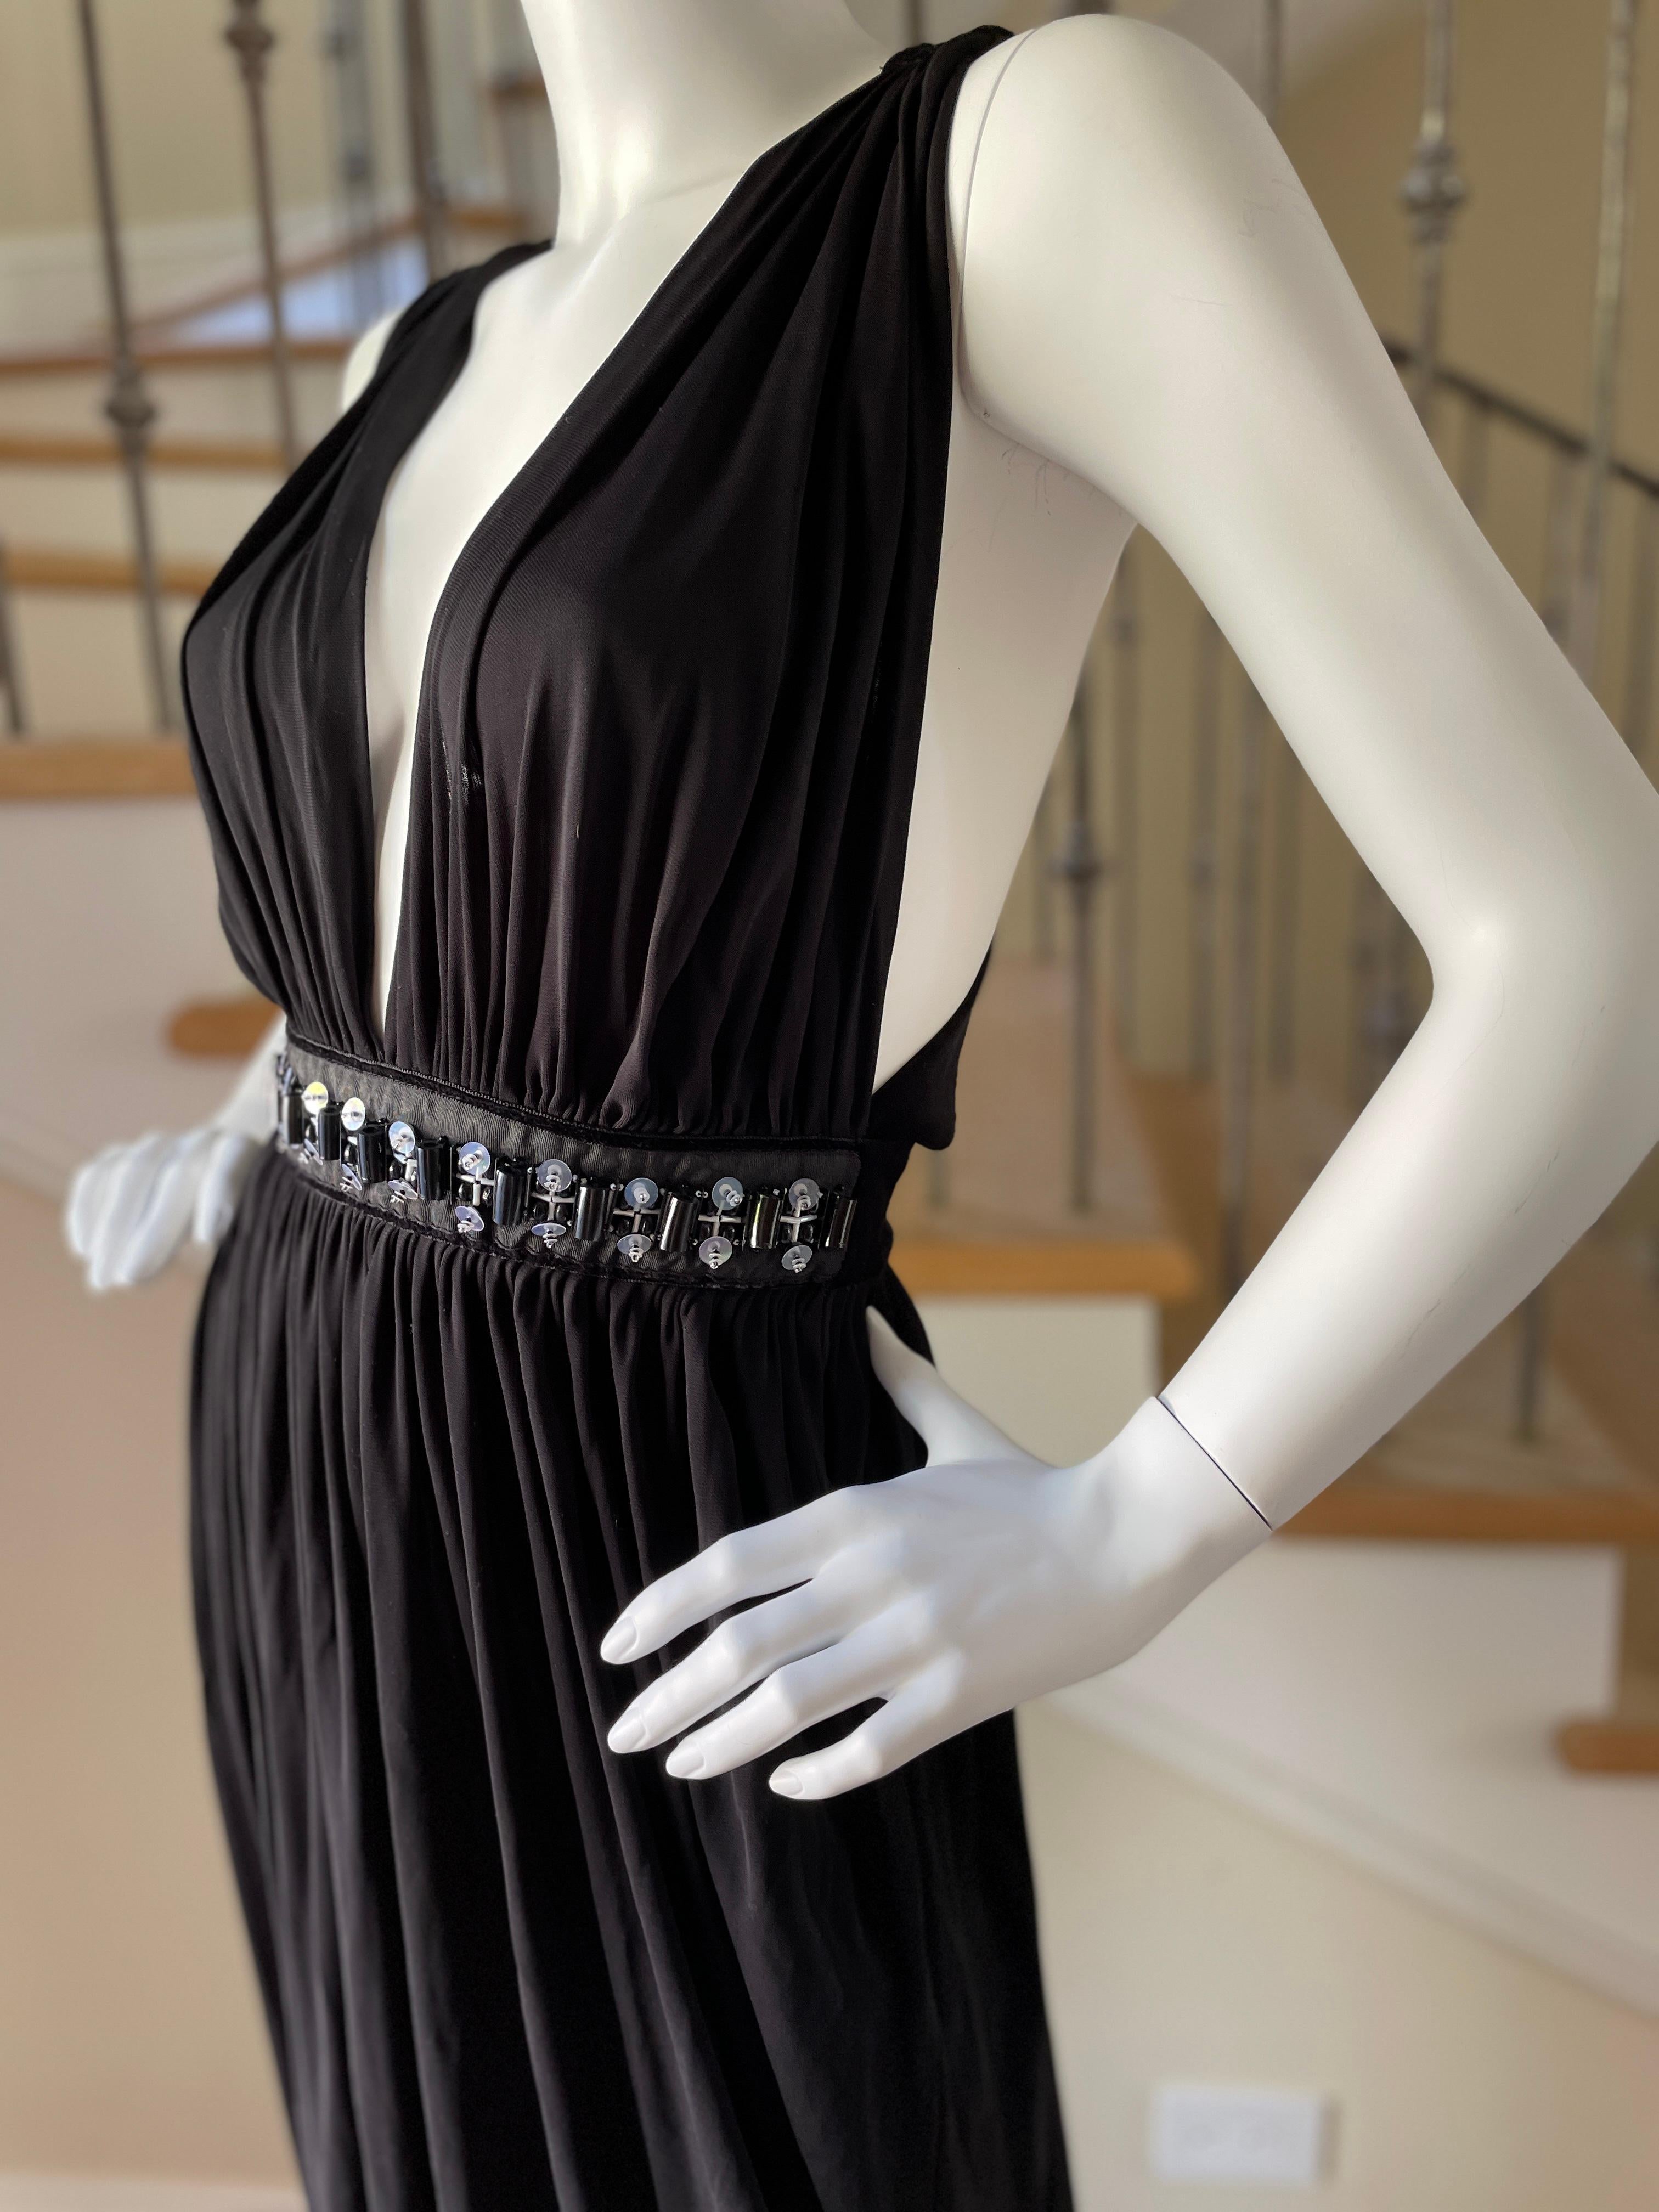 D&G by Dolce & Gabbana Vintage Plunging Black Evening Dress w Embellished Waist For Sale 4